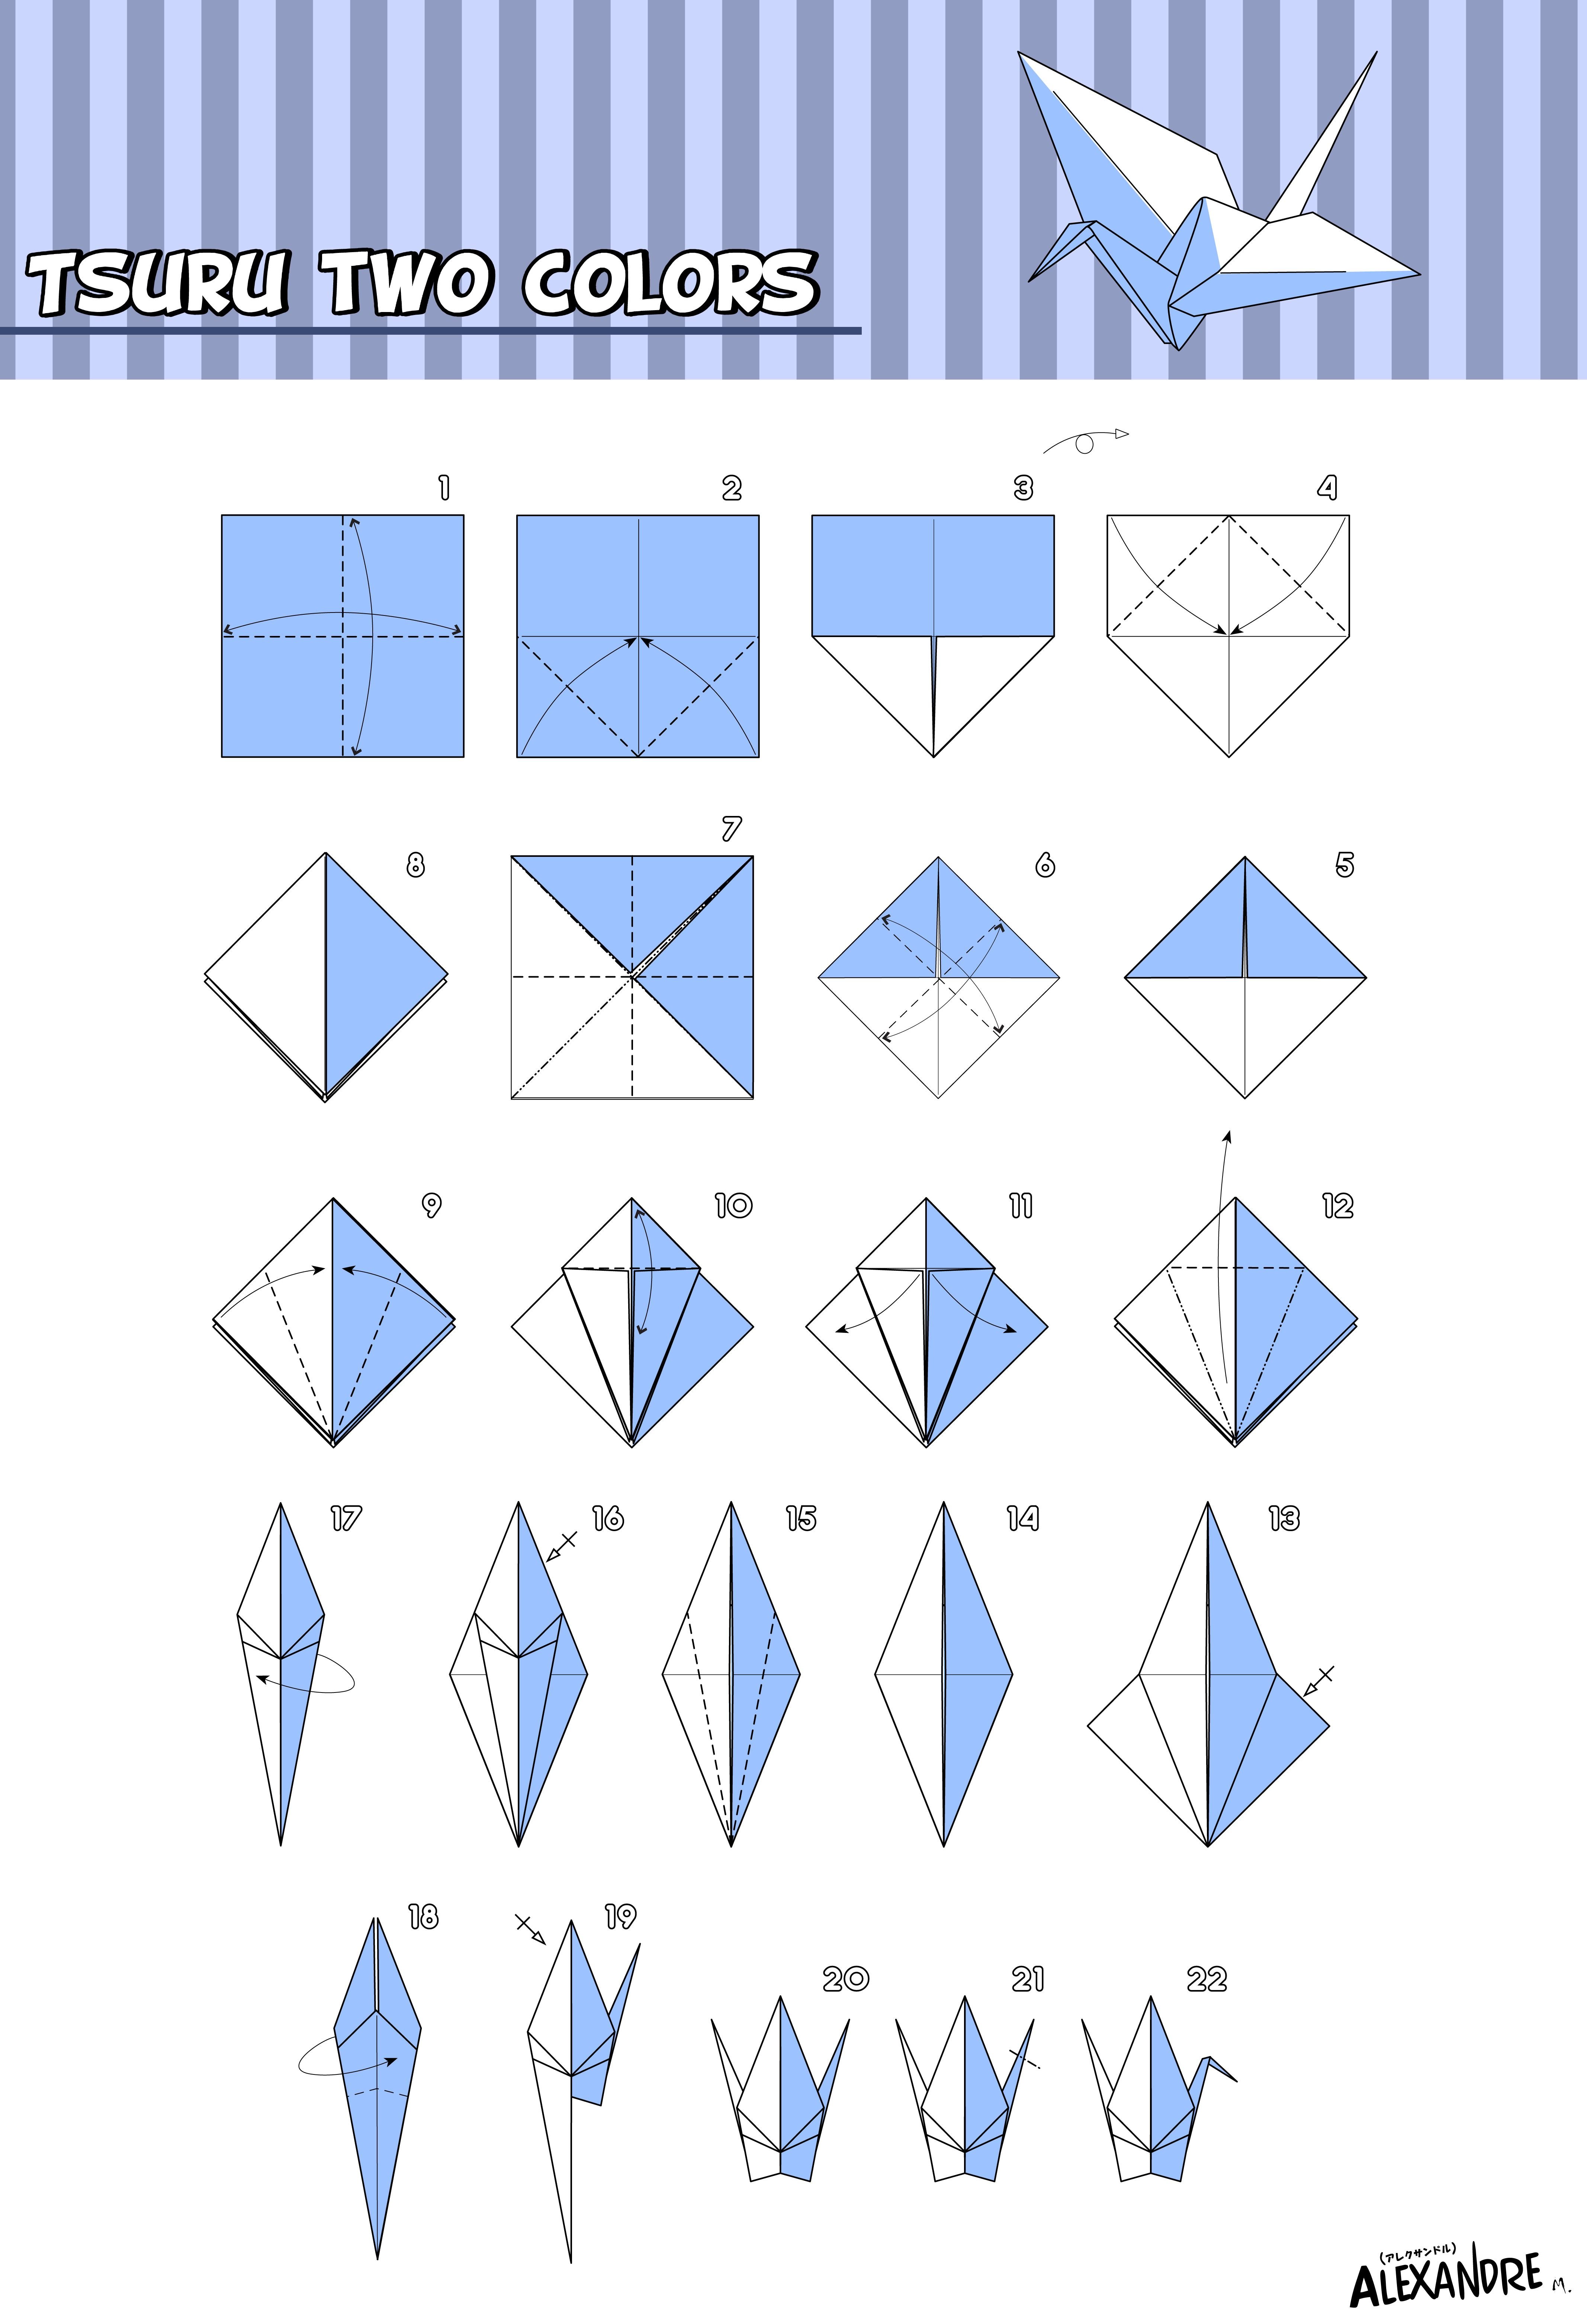 Оригами журавль поэтапно. Как сложить журавля из бумаги пошагово. Оригами из бумаги для начинающих Журавлик. Схема как сложить журавлика из бумаги. Журавлик Цуру оригами схема.